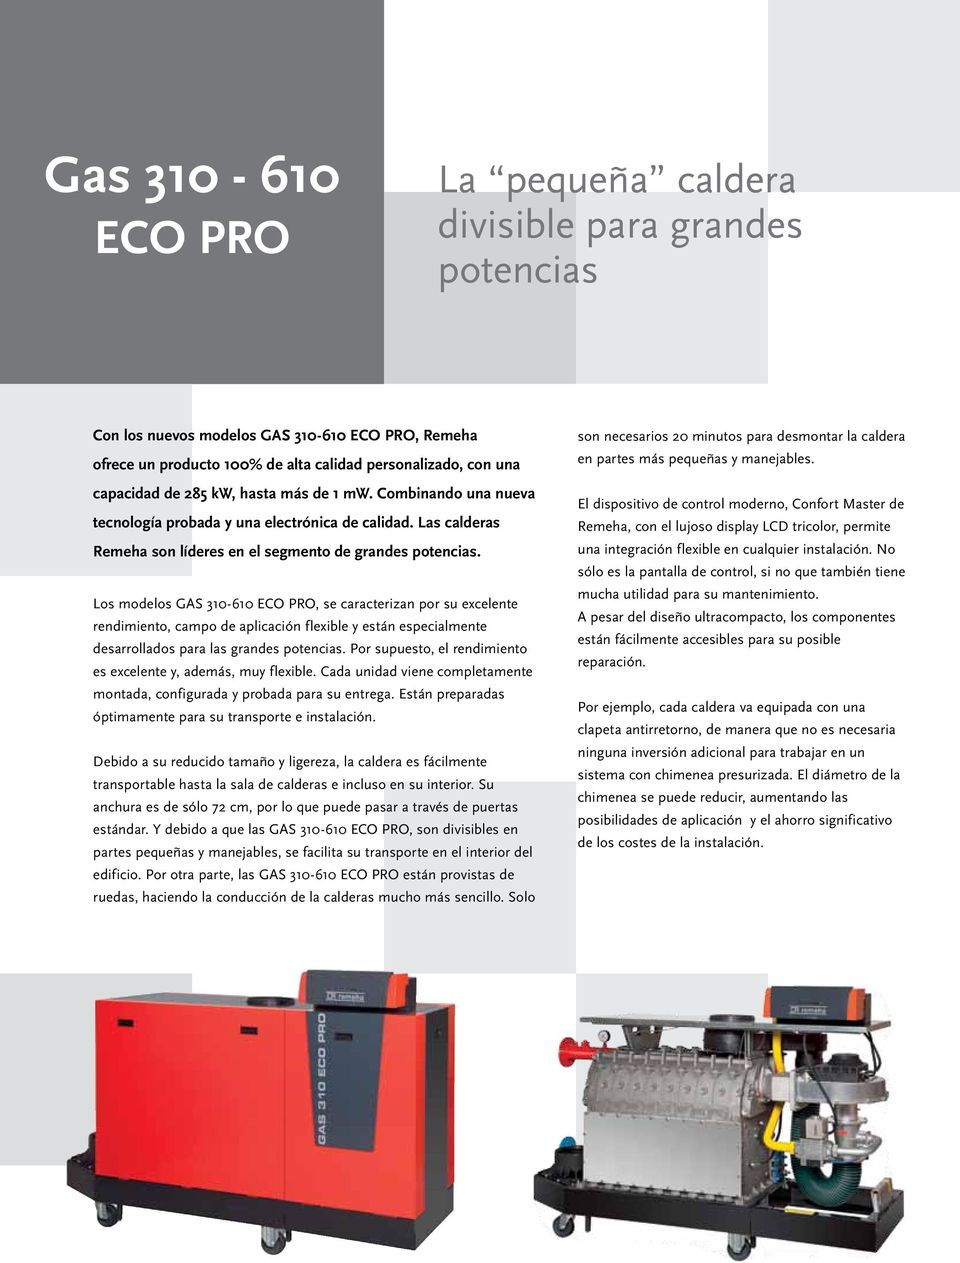 Los modelos GAS 310-610 ECO PRO, se caracterizan por su excelente rendimiento, campo de aplicación flexible y están especialmente desarrollados para las grandes potencias.